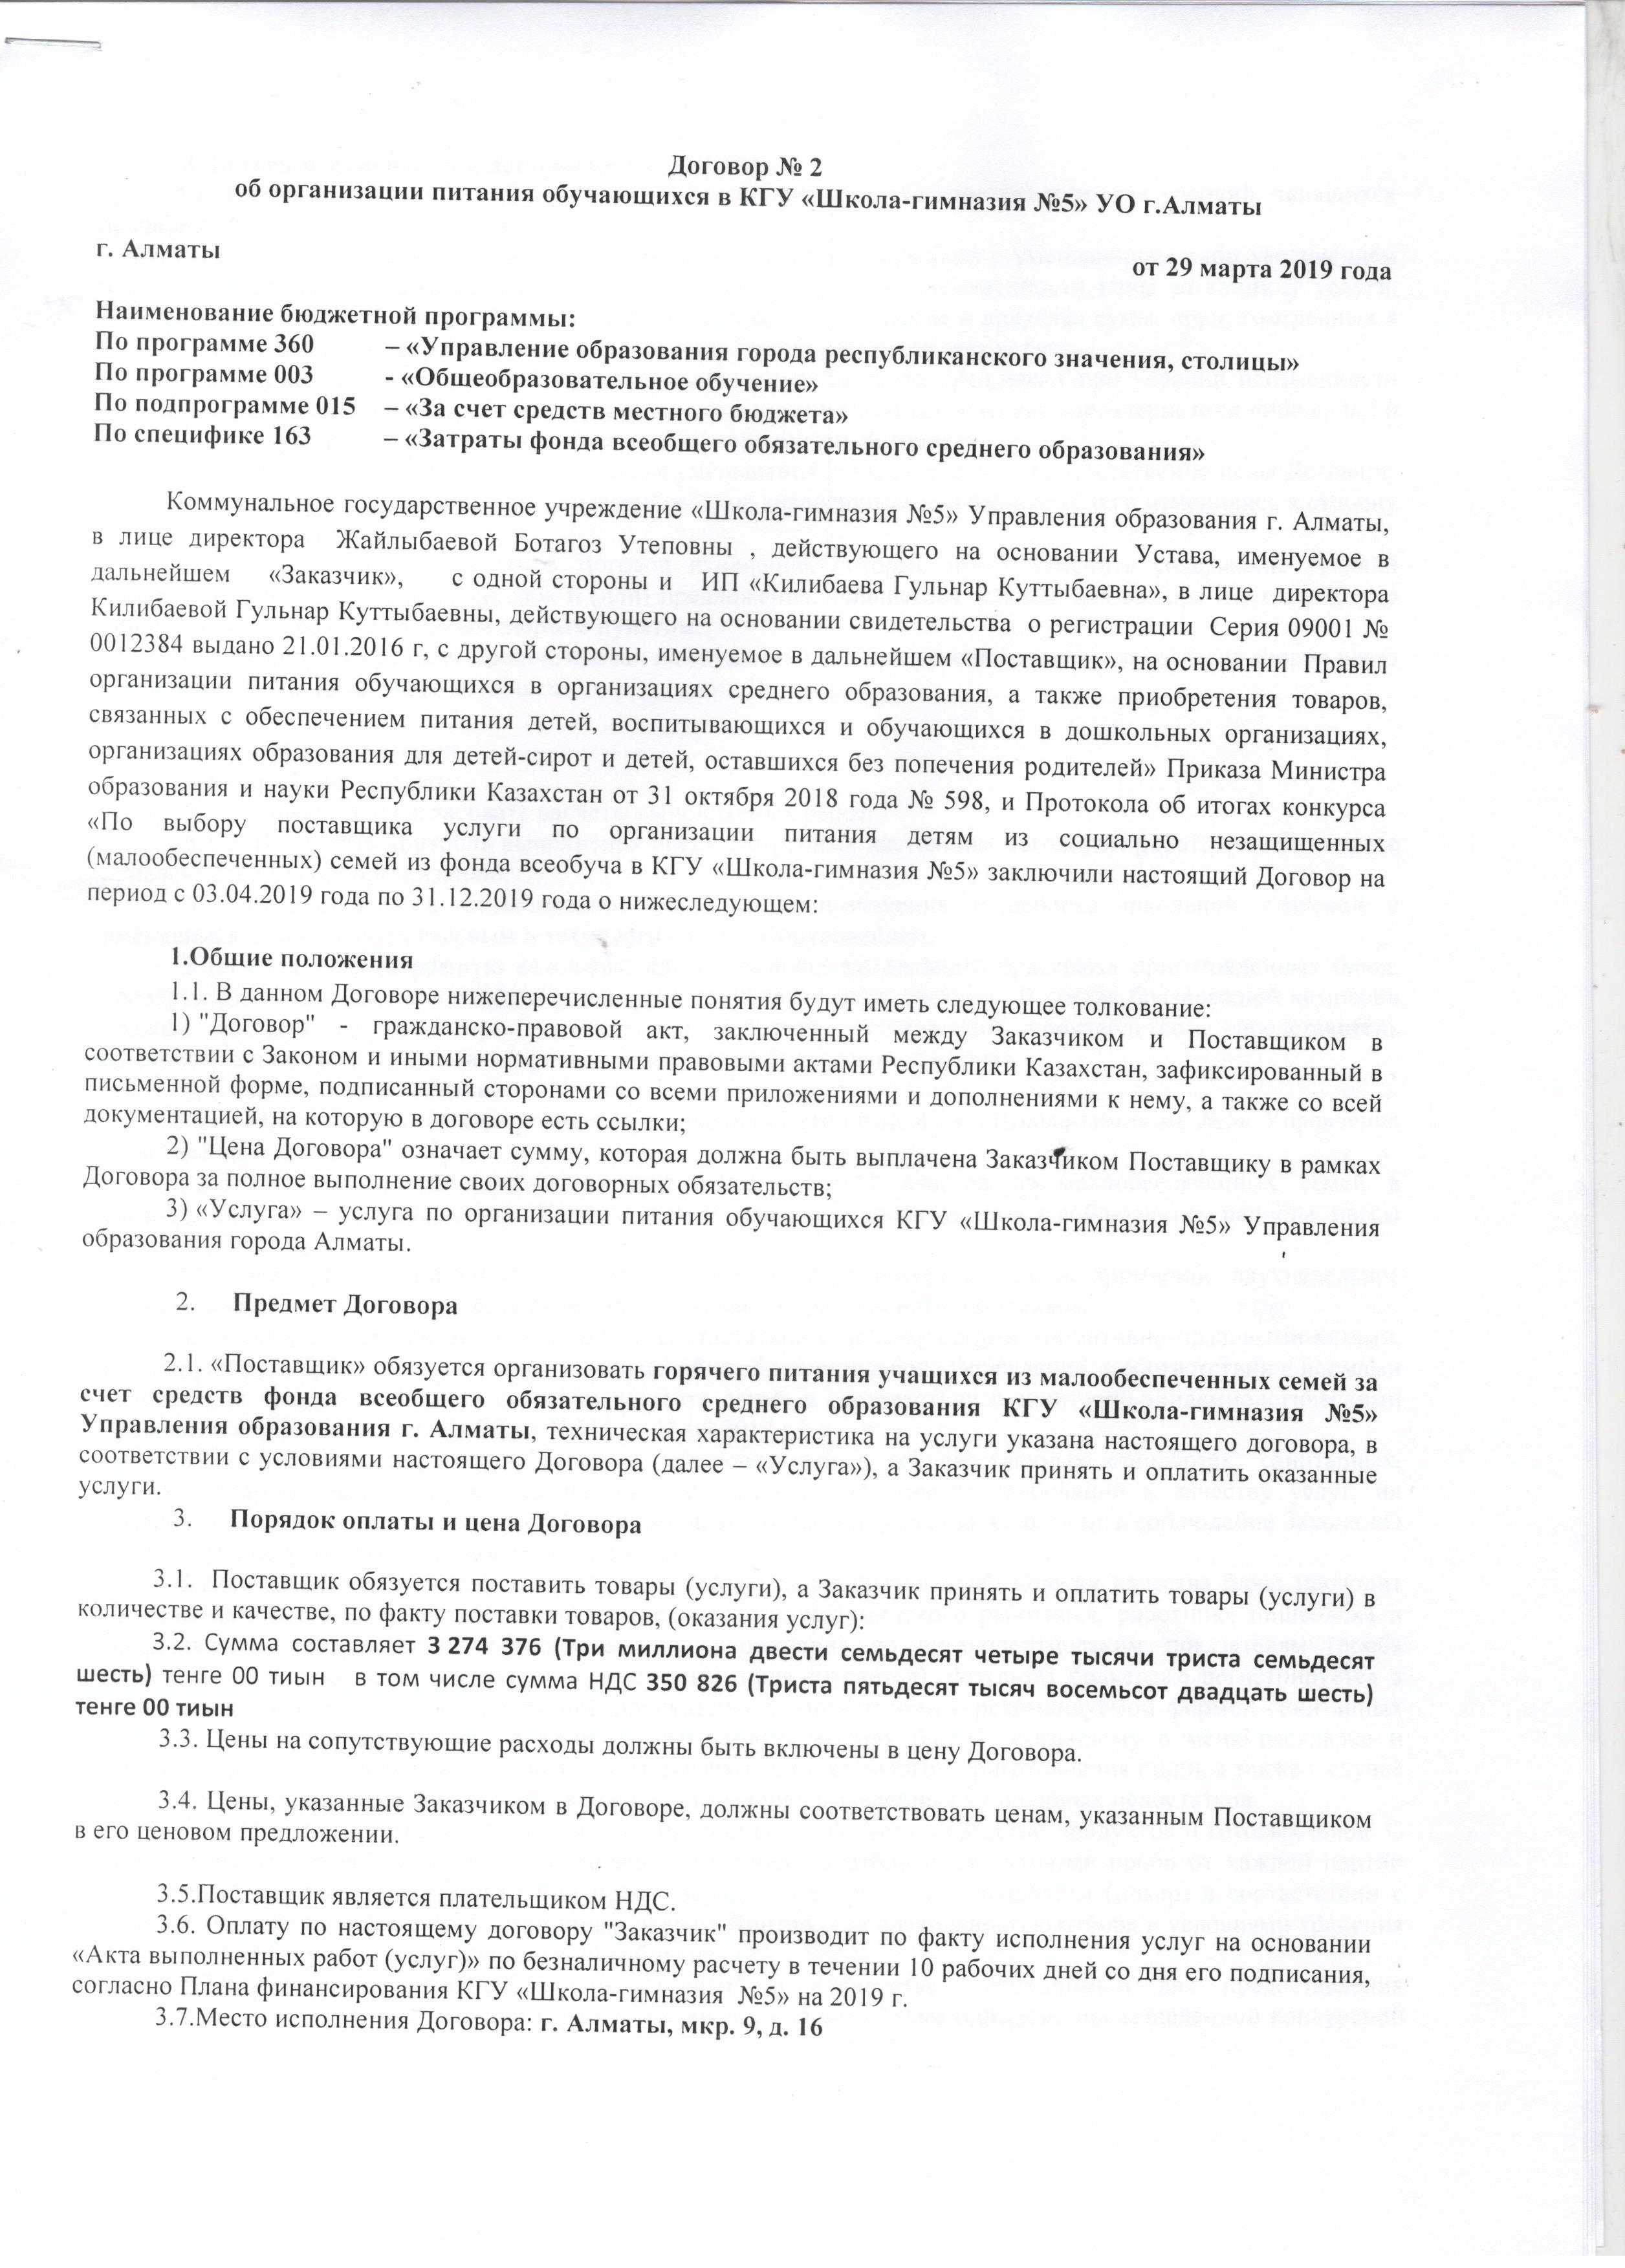 Договор №2 об организации питания оюучающихся в КГУ ШГ №5 УО. г.Алматы